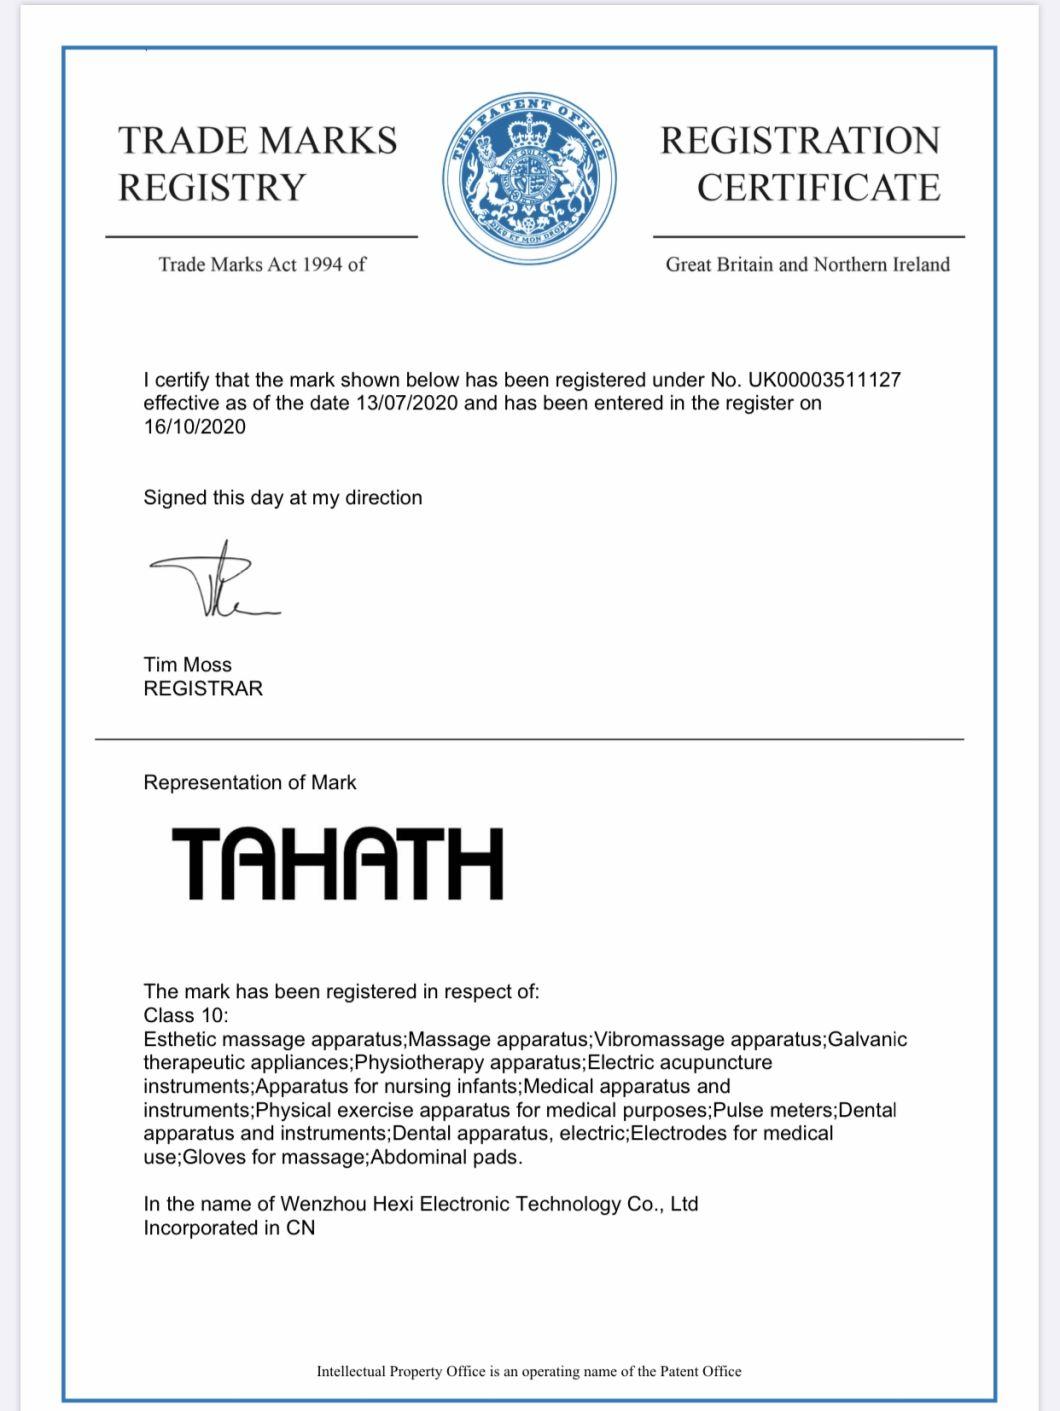 Tahath Mechanical Massager Carton 16.8 X 15.3 9.8 Inches; 10.65 Pounds Wholesale Detox Foot Bath Pump